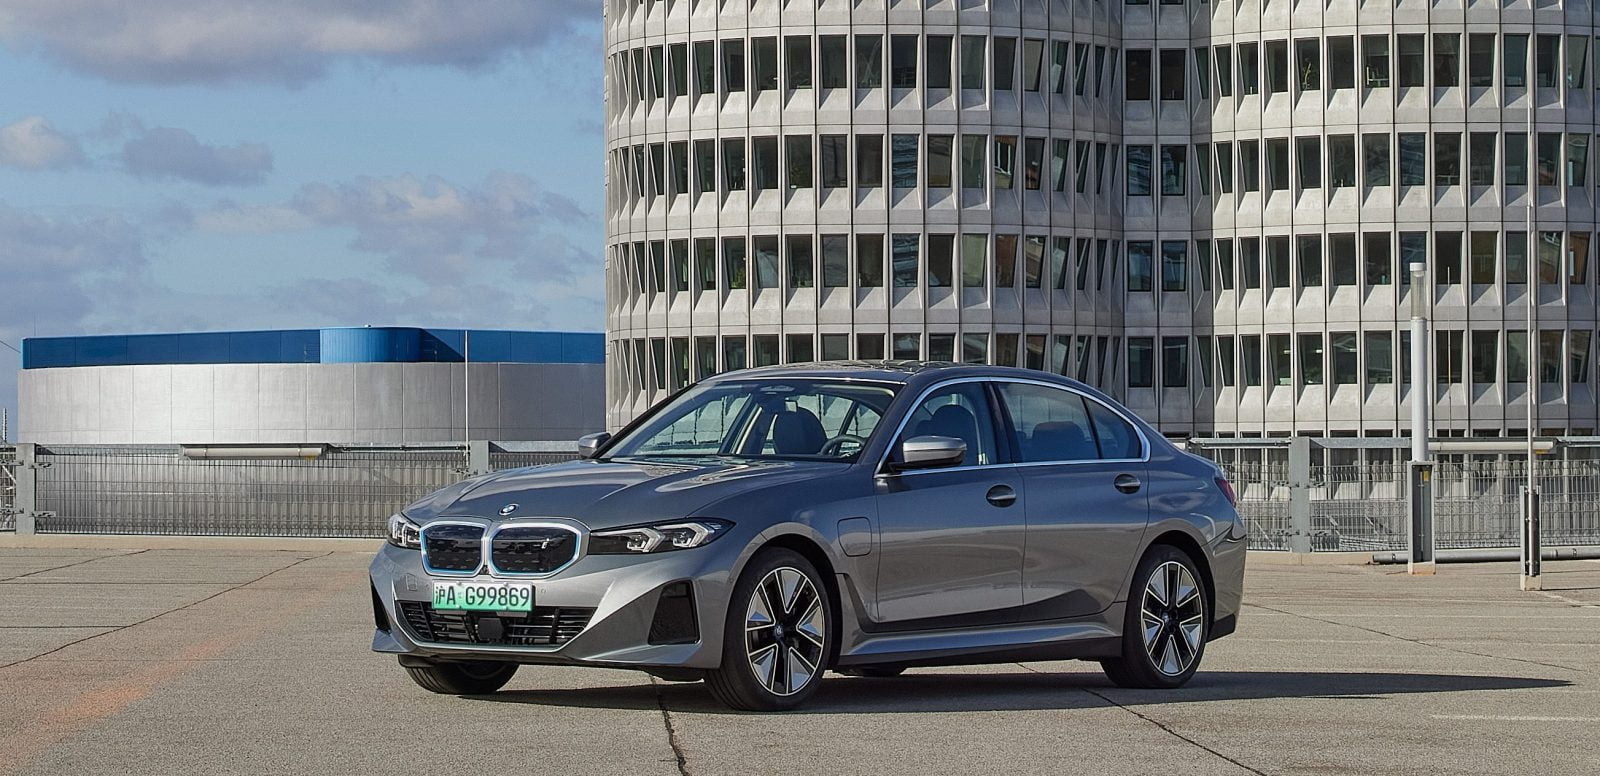 BMW dévoile la nouvelle i3 électrique basée sur la Série 3, mais elle n'est destinée qu'à la Chine pour le moment.